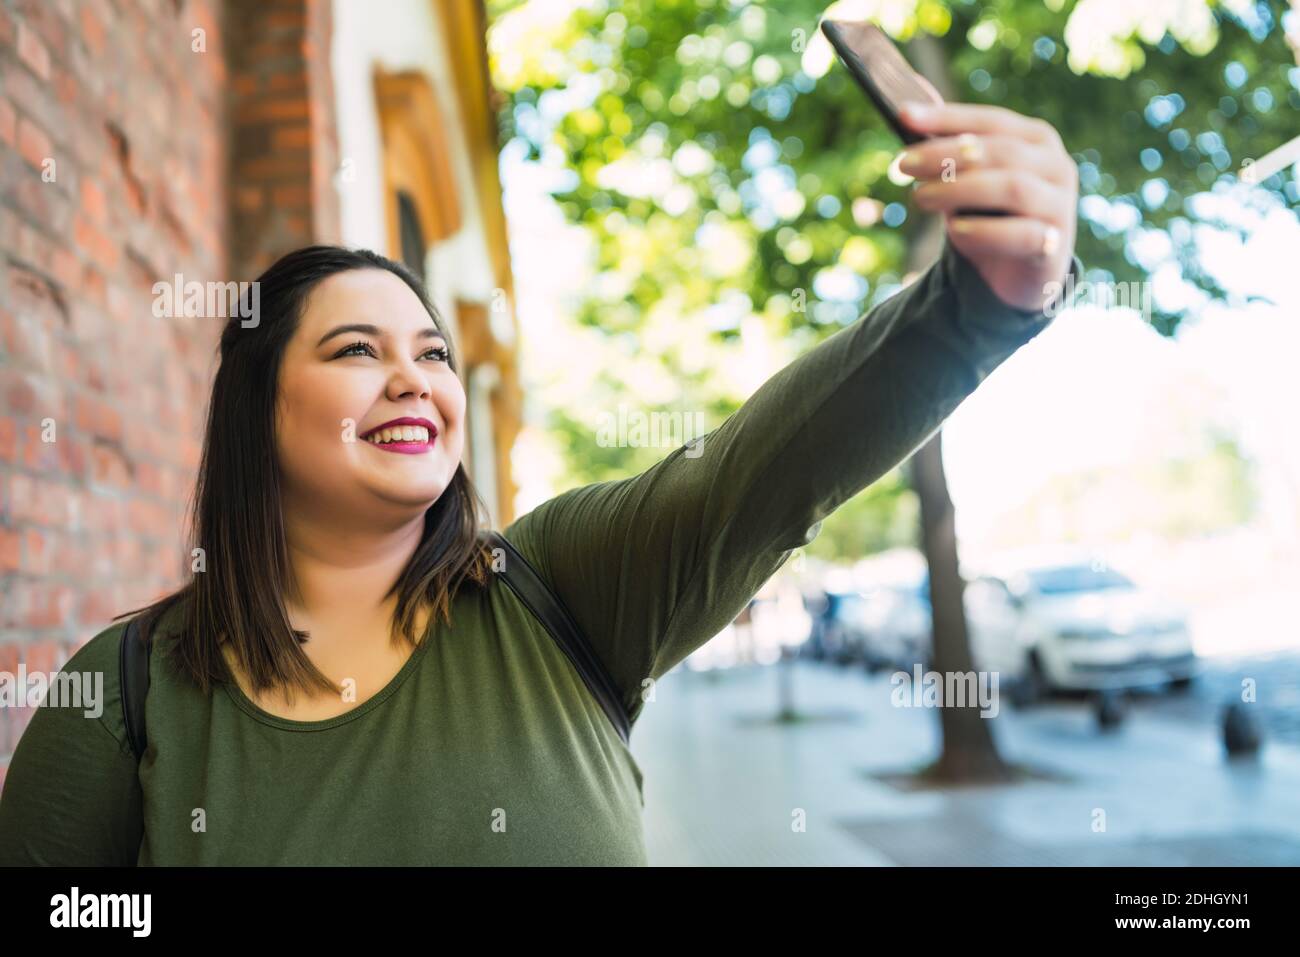 939 Plus Size Woman Taking Selfie Images, Stock Photos, 3D objects, &  Vectors